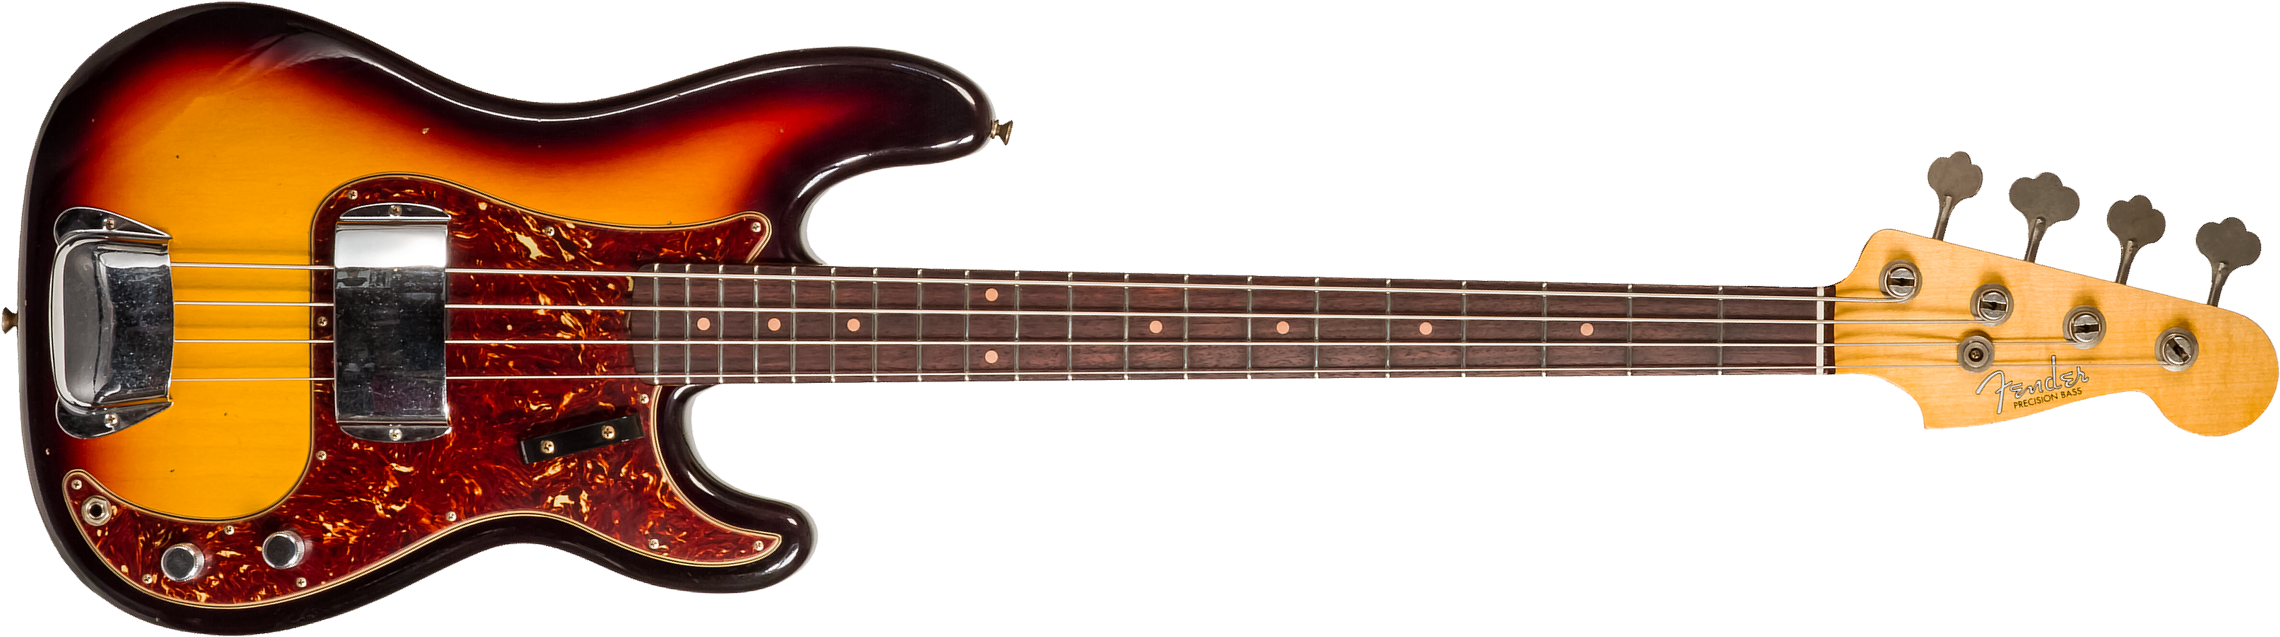 Fender Custom Shop Precision Bass 1963 Rw #cz56919 - Journeyman Relic 3-color Sunburst - Basse Électrique Solid Body - Main picture